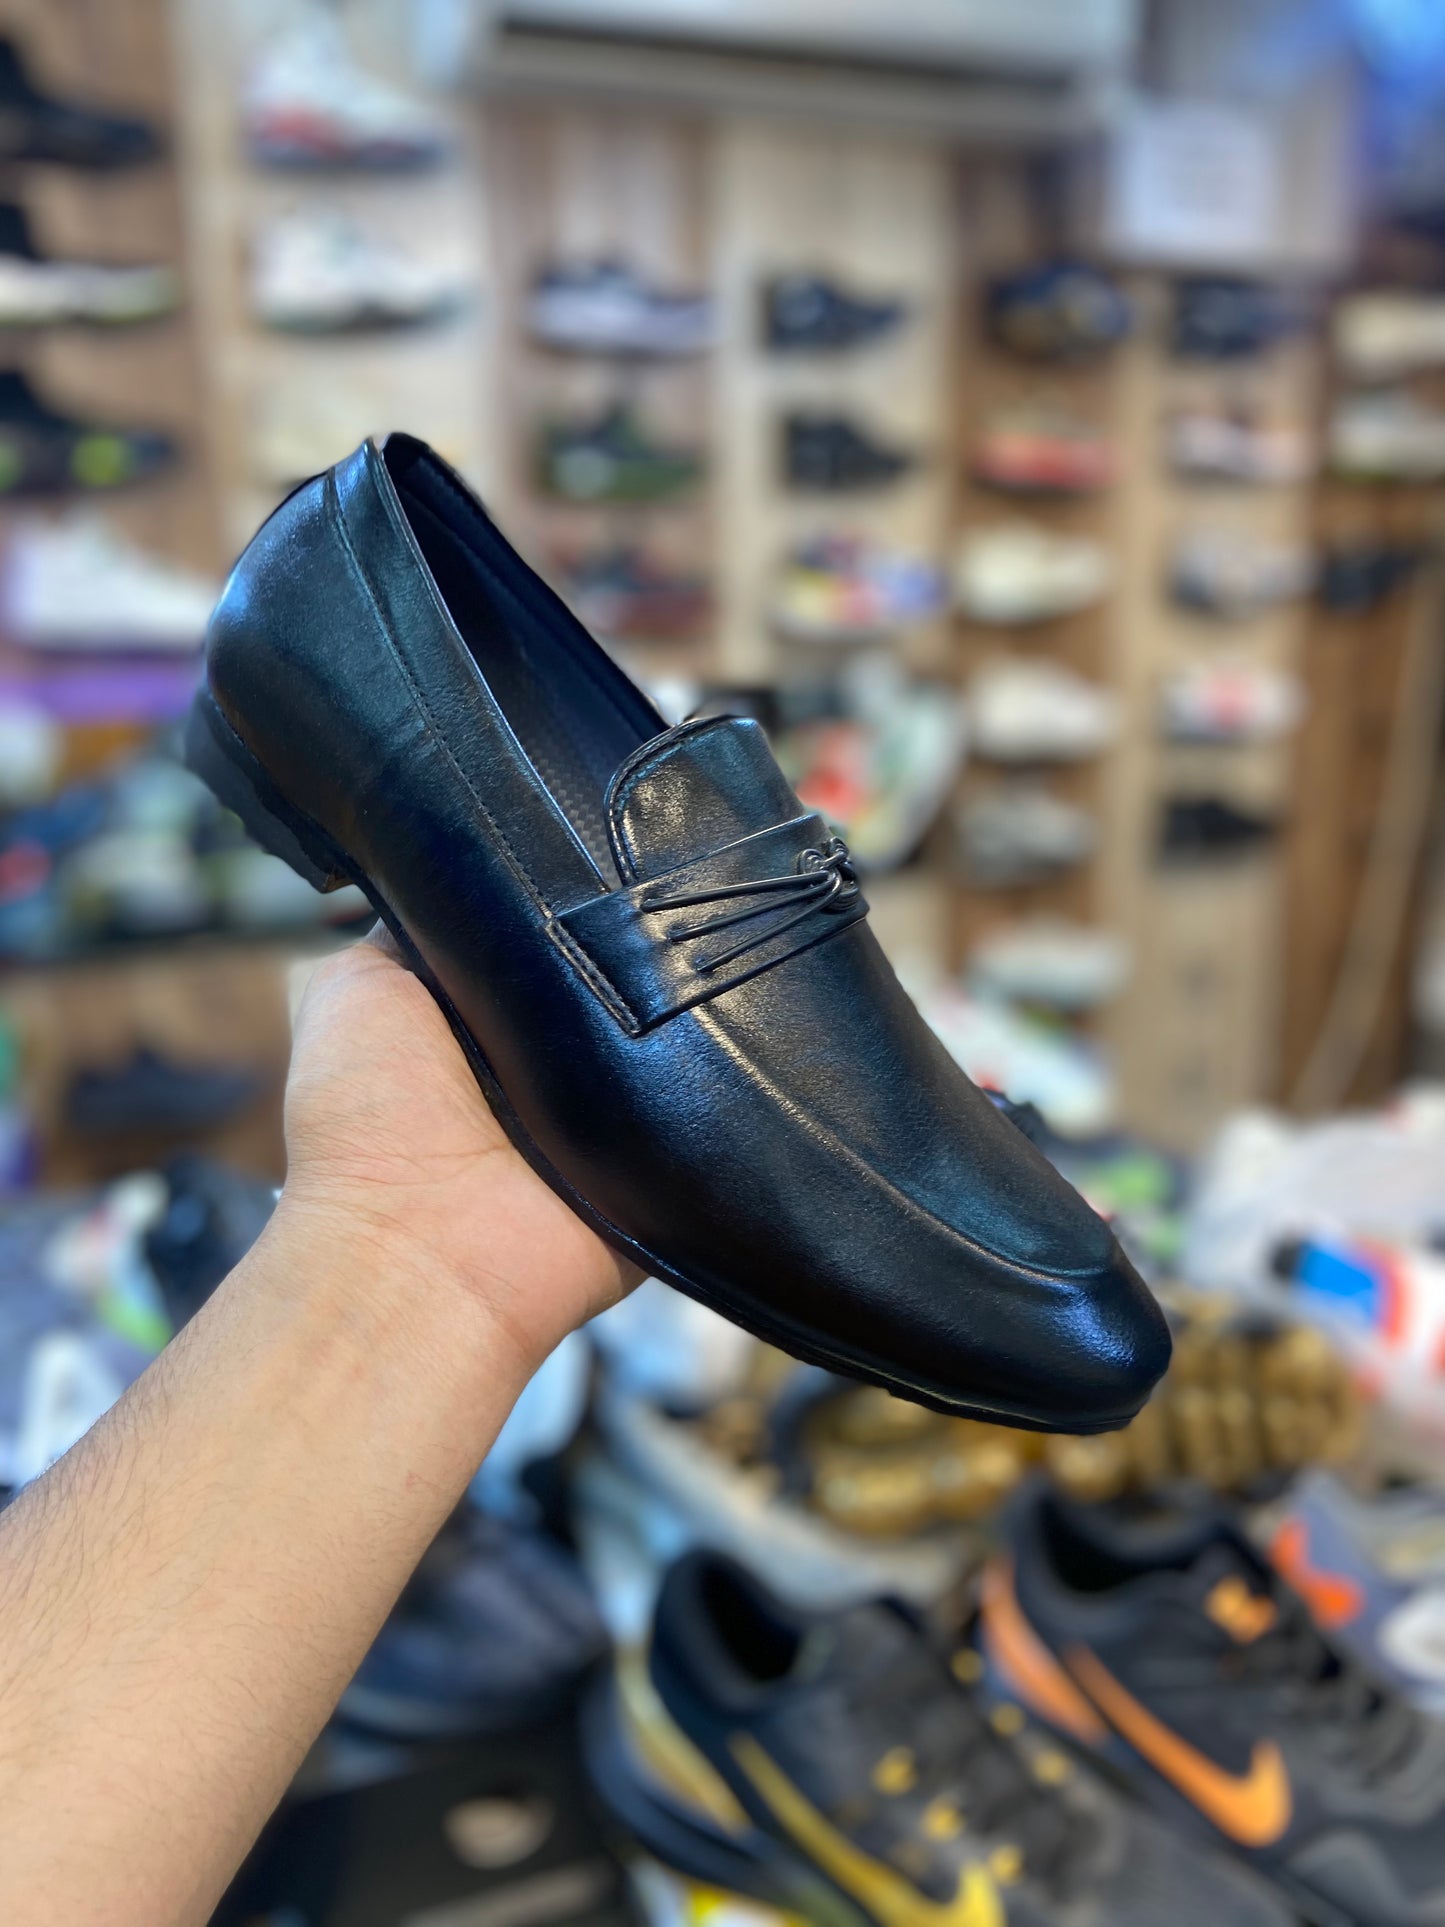 Black Loafers Shoes For Men Model Number 1001